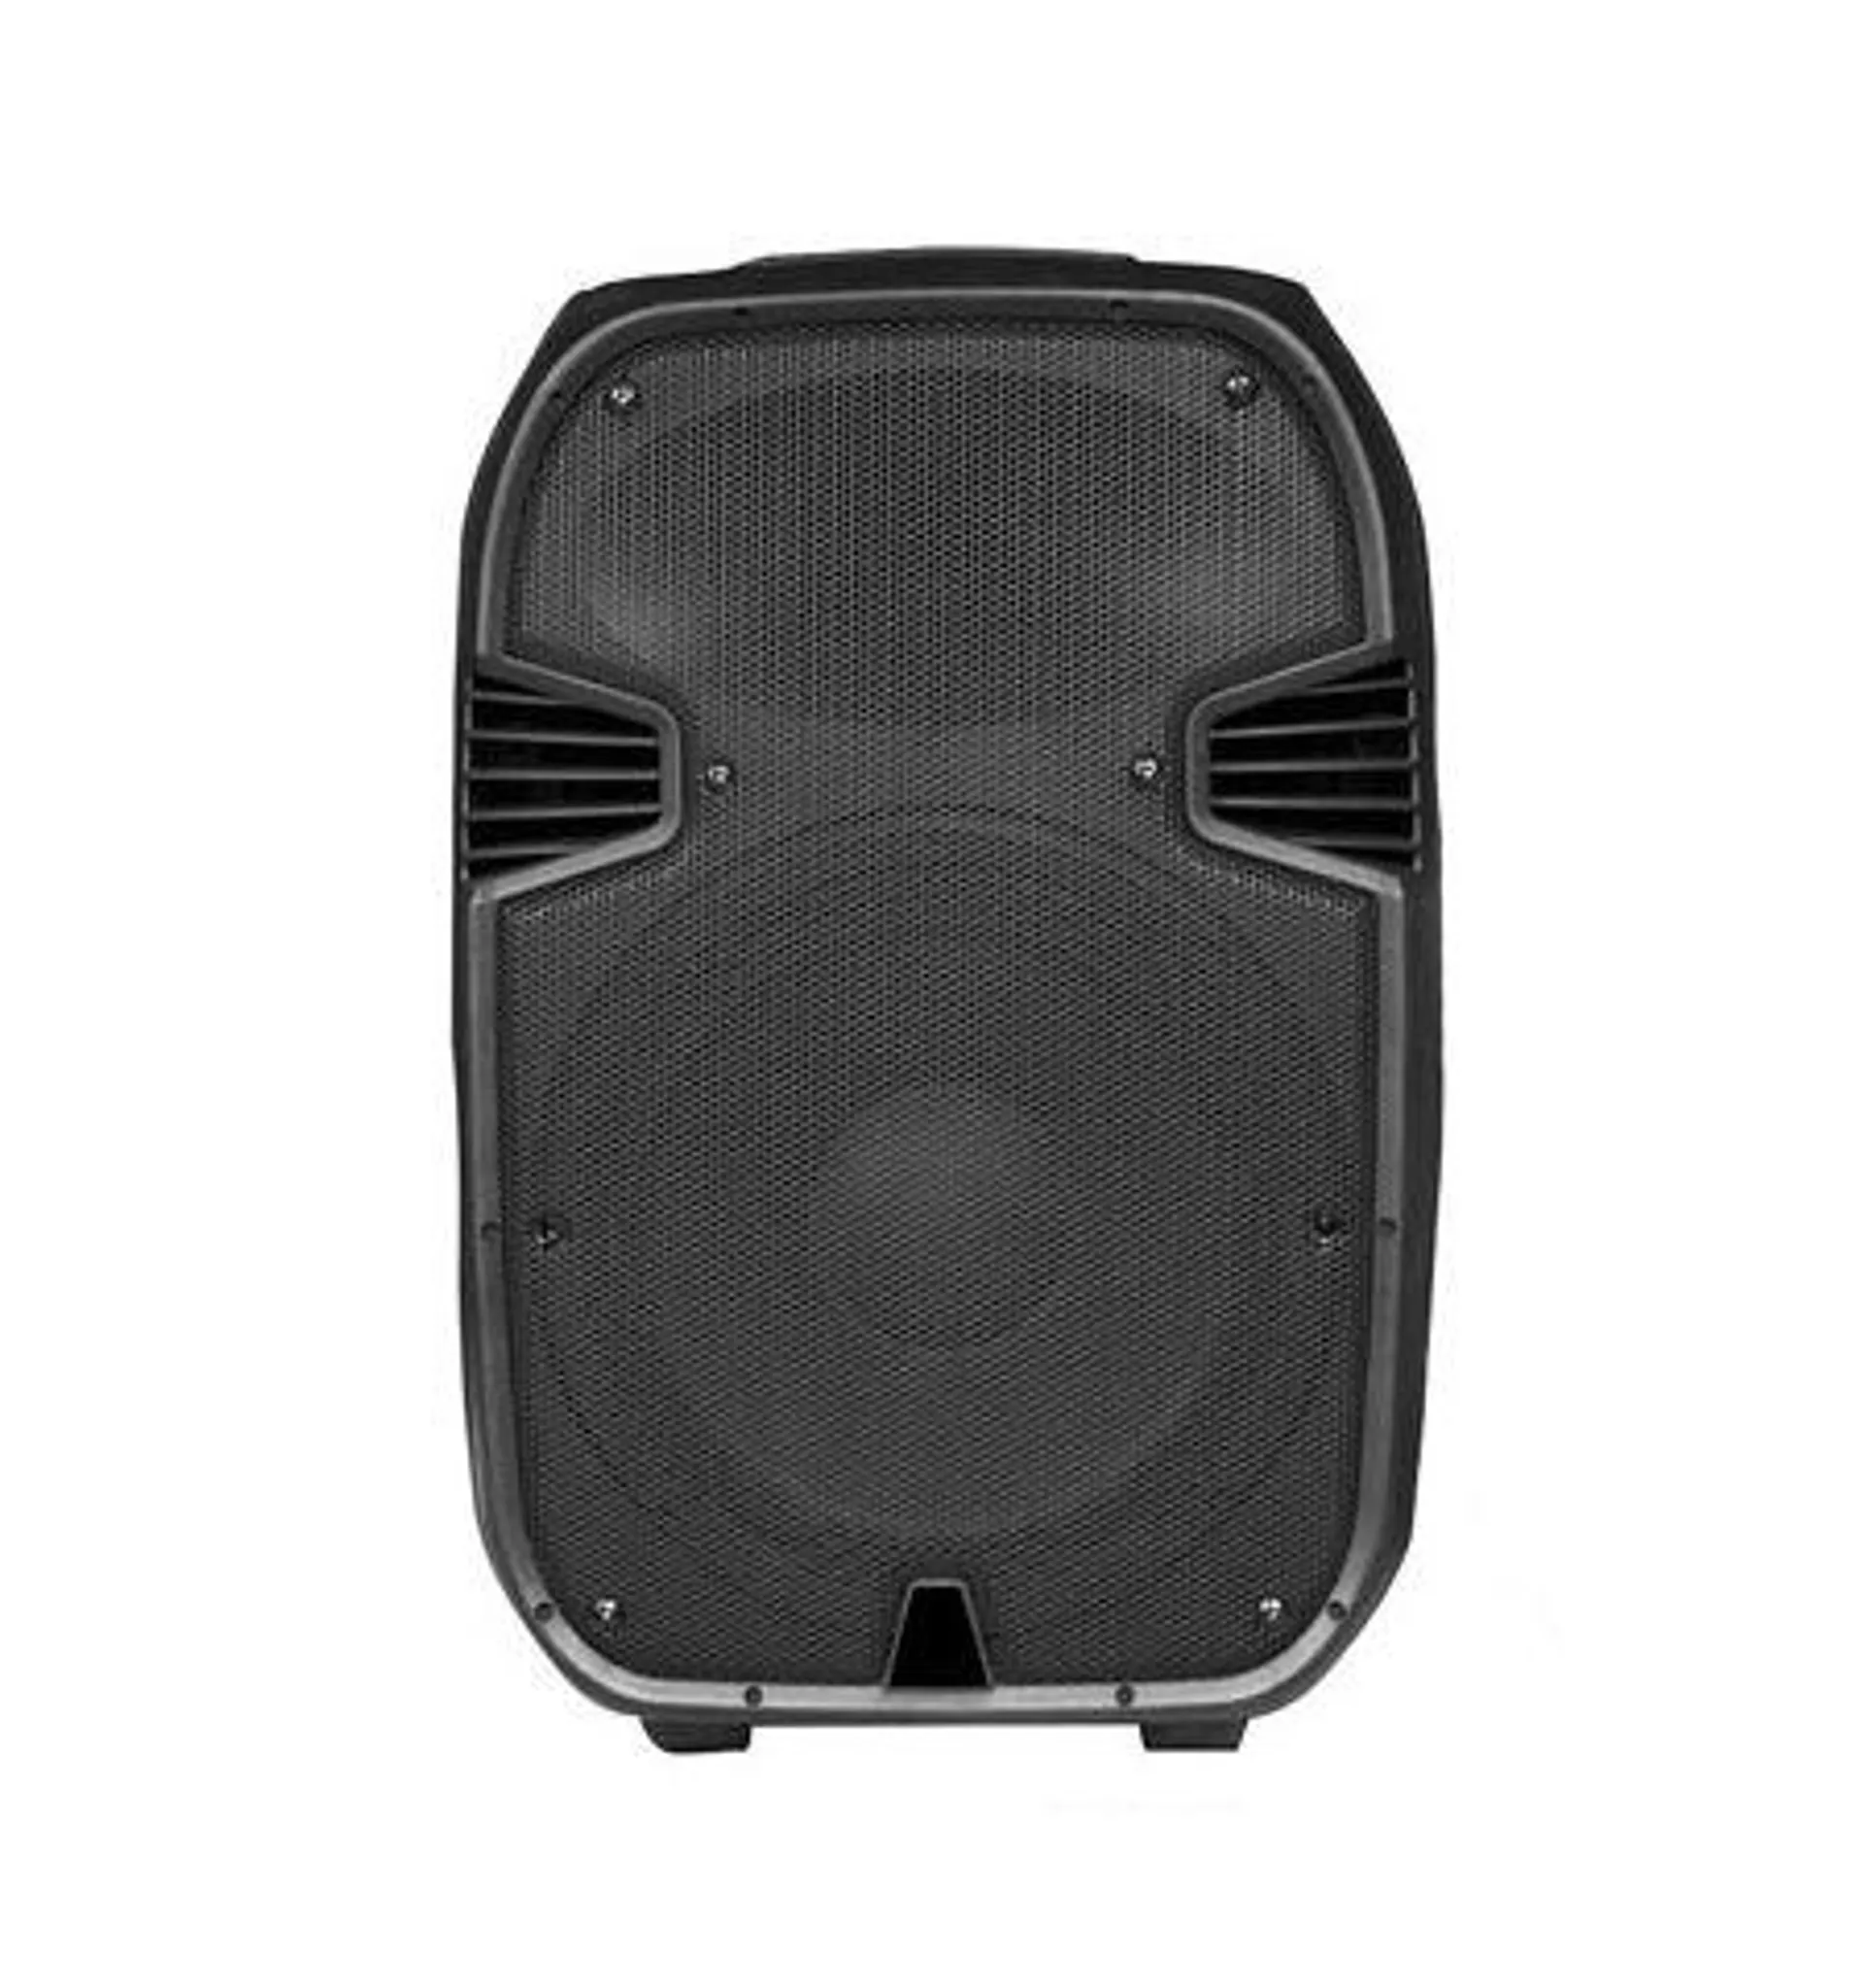 Amplified 800W 10" DJ Speaker